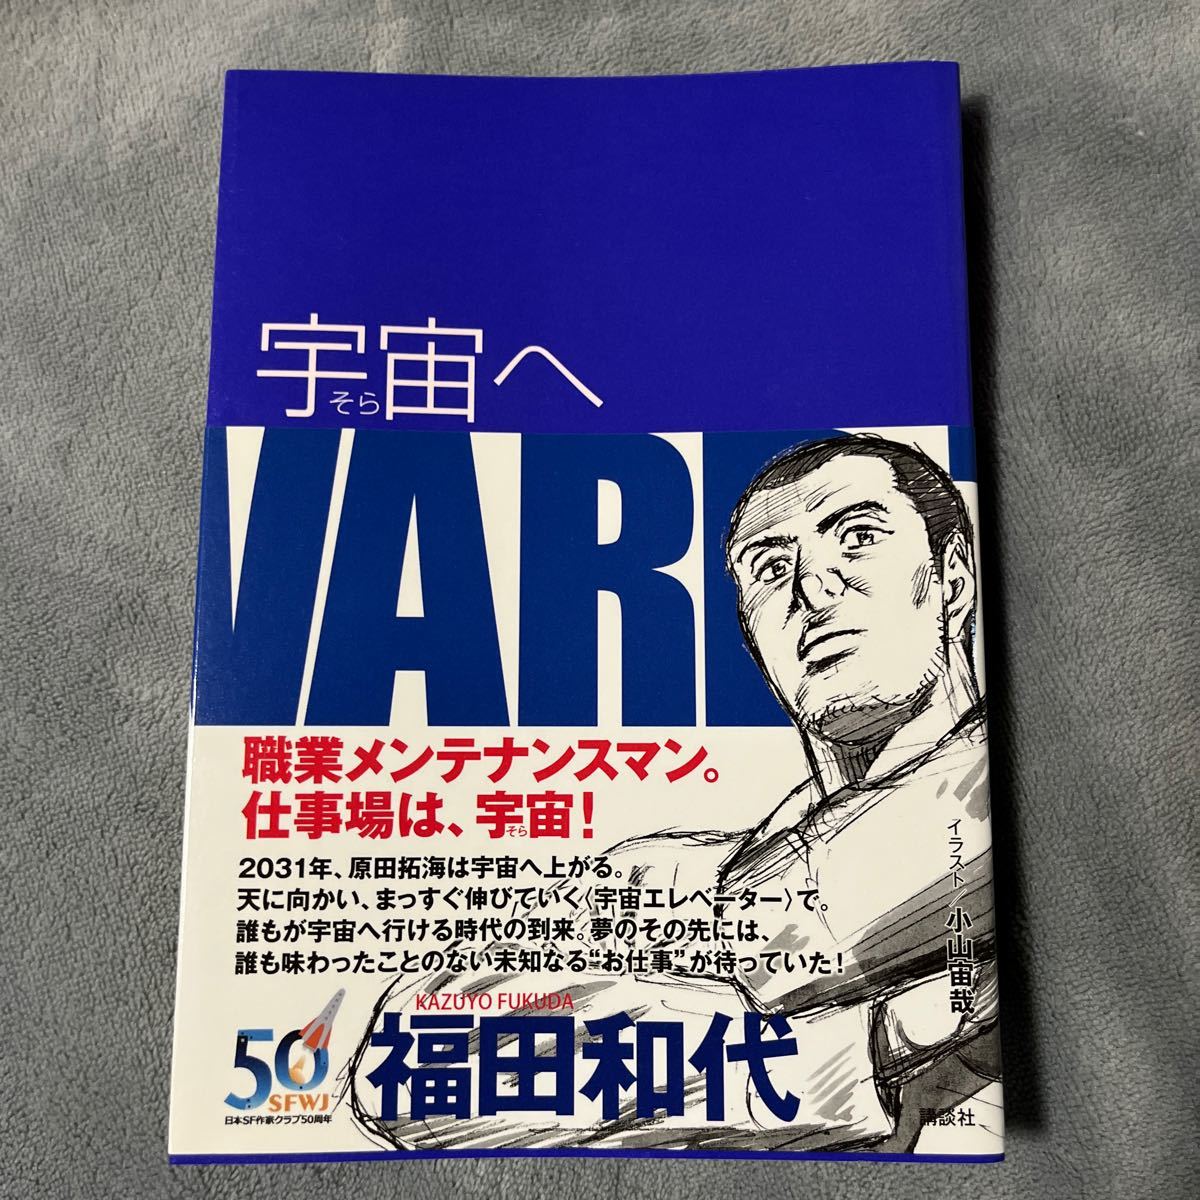 [Signiertes Buch/Handgezeichnete Illustration/Erstausgabe] Kazuyo Fukuda To Space mit Obi, signiertes Buch, Kodansha, Japanischer Autor, Ha Reihe, Andere